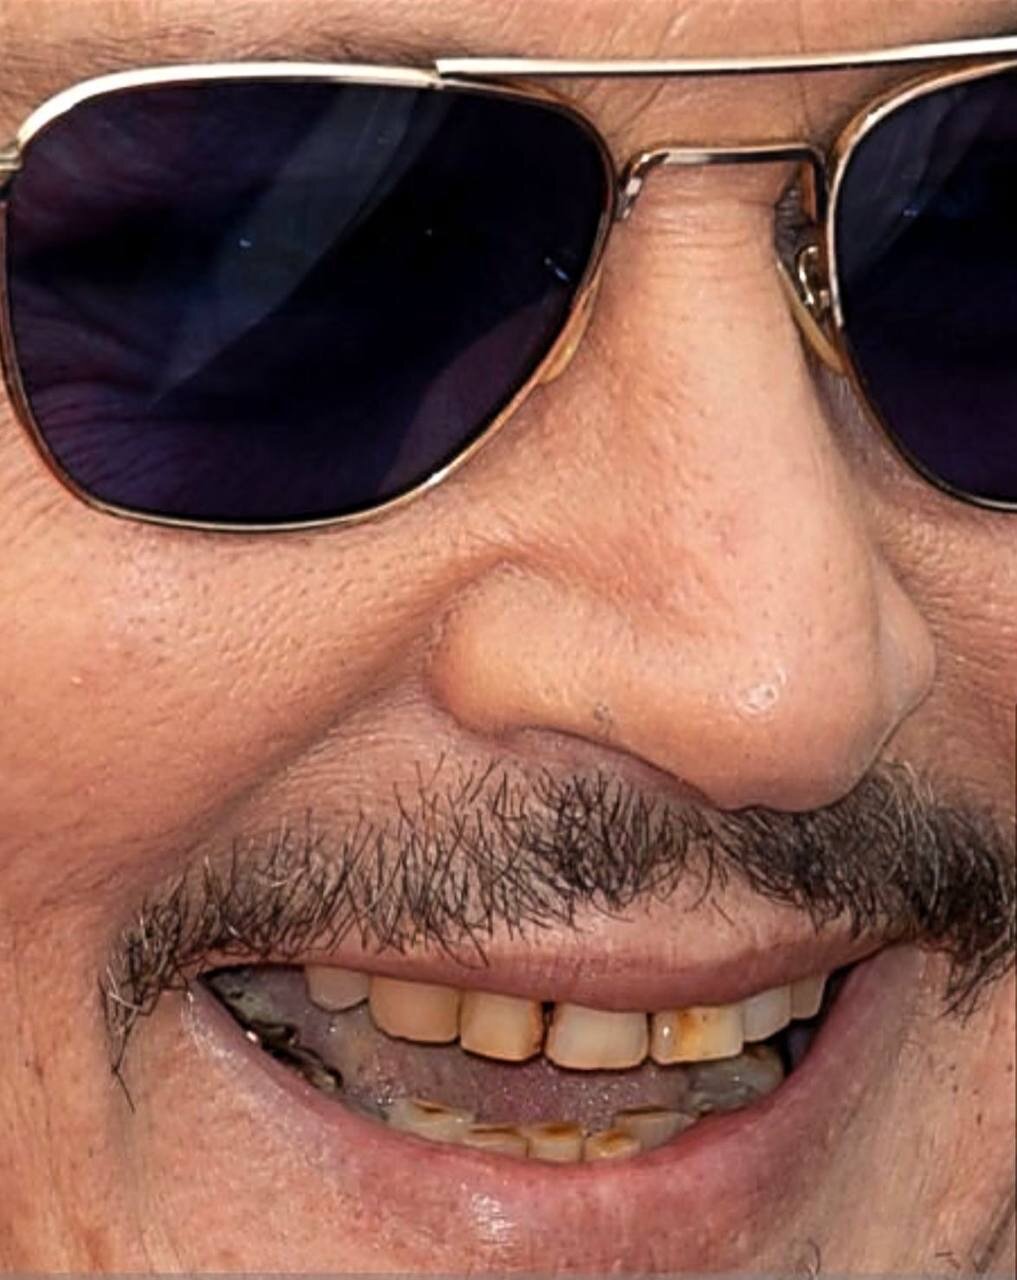 «Зато не виниры»: когда Джонни Депп открыл рот, поклонники по всему миру пришли в ужас, глядя на его зубы